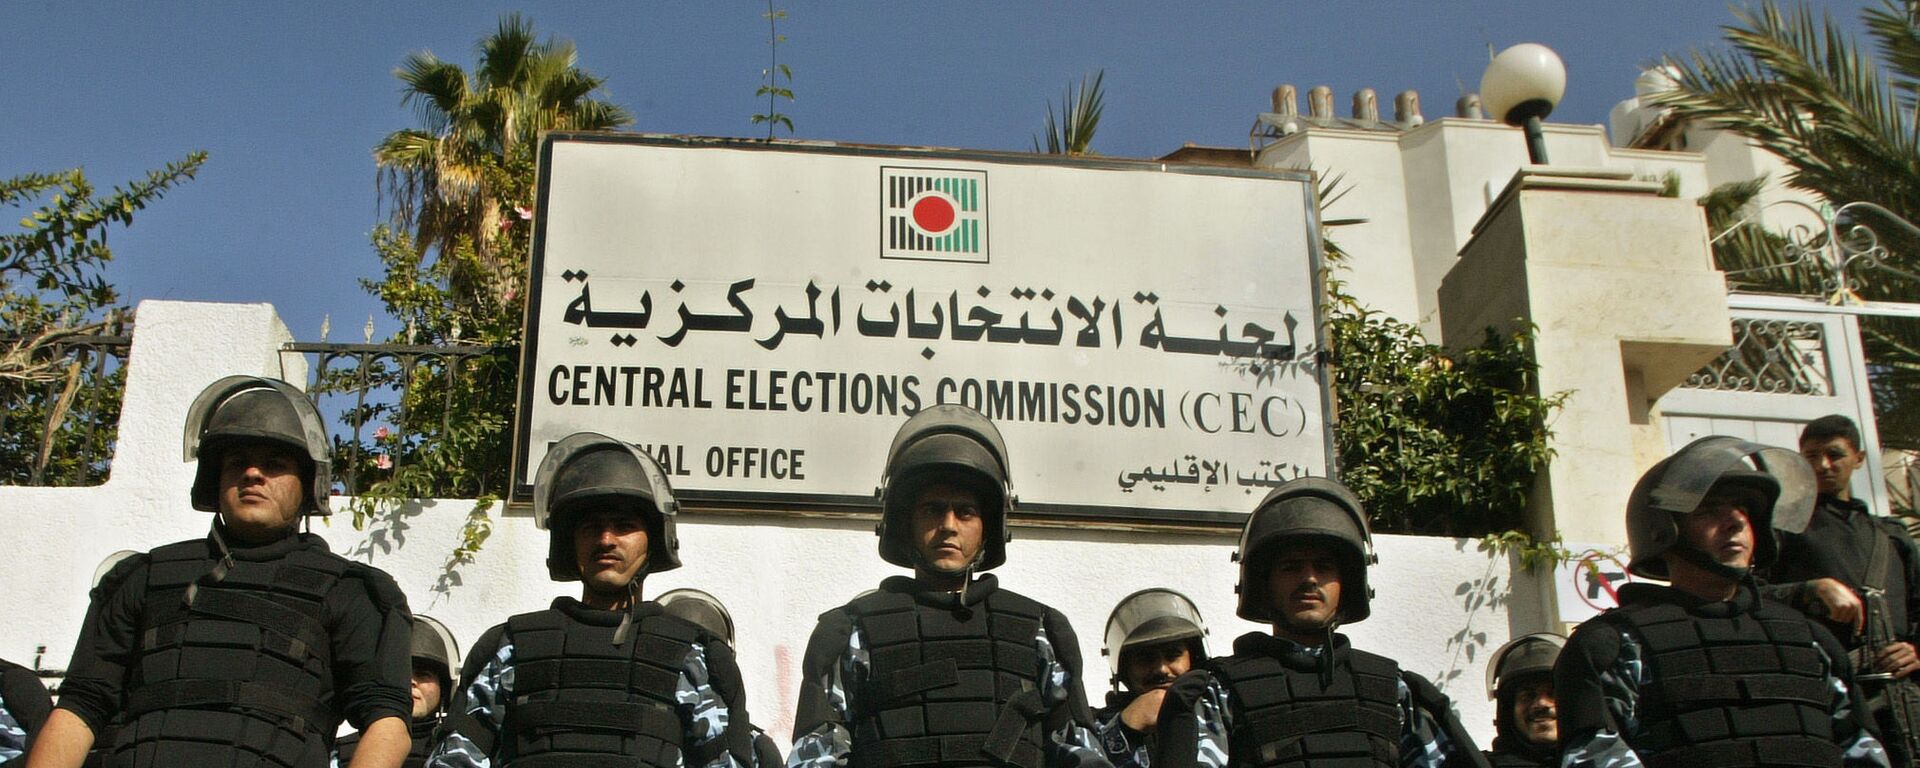 لجنة الانتخابات المركزية - فلسطين، مدينة غزة، 2006 - سبوتنيك عربي, 1920, 04.02.2021